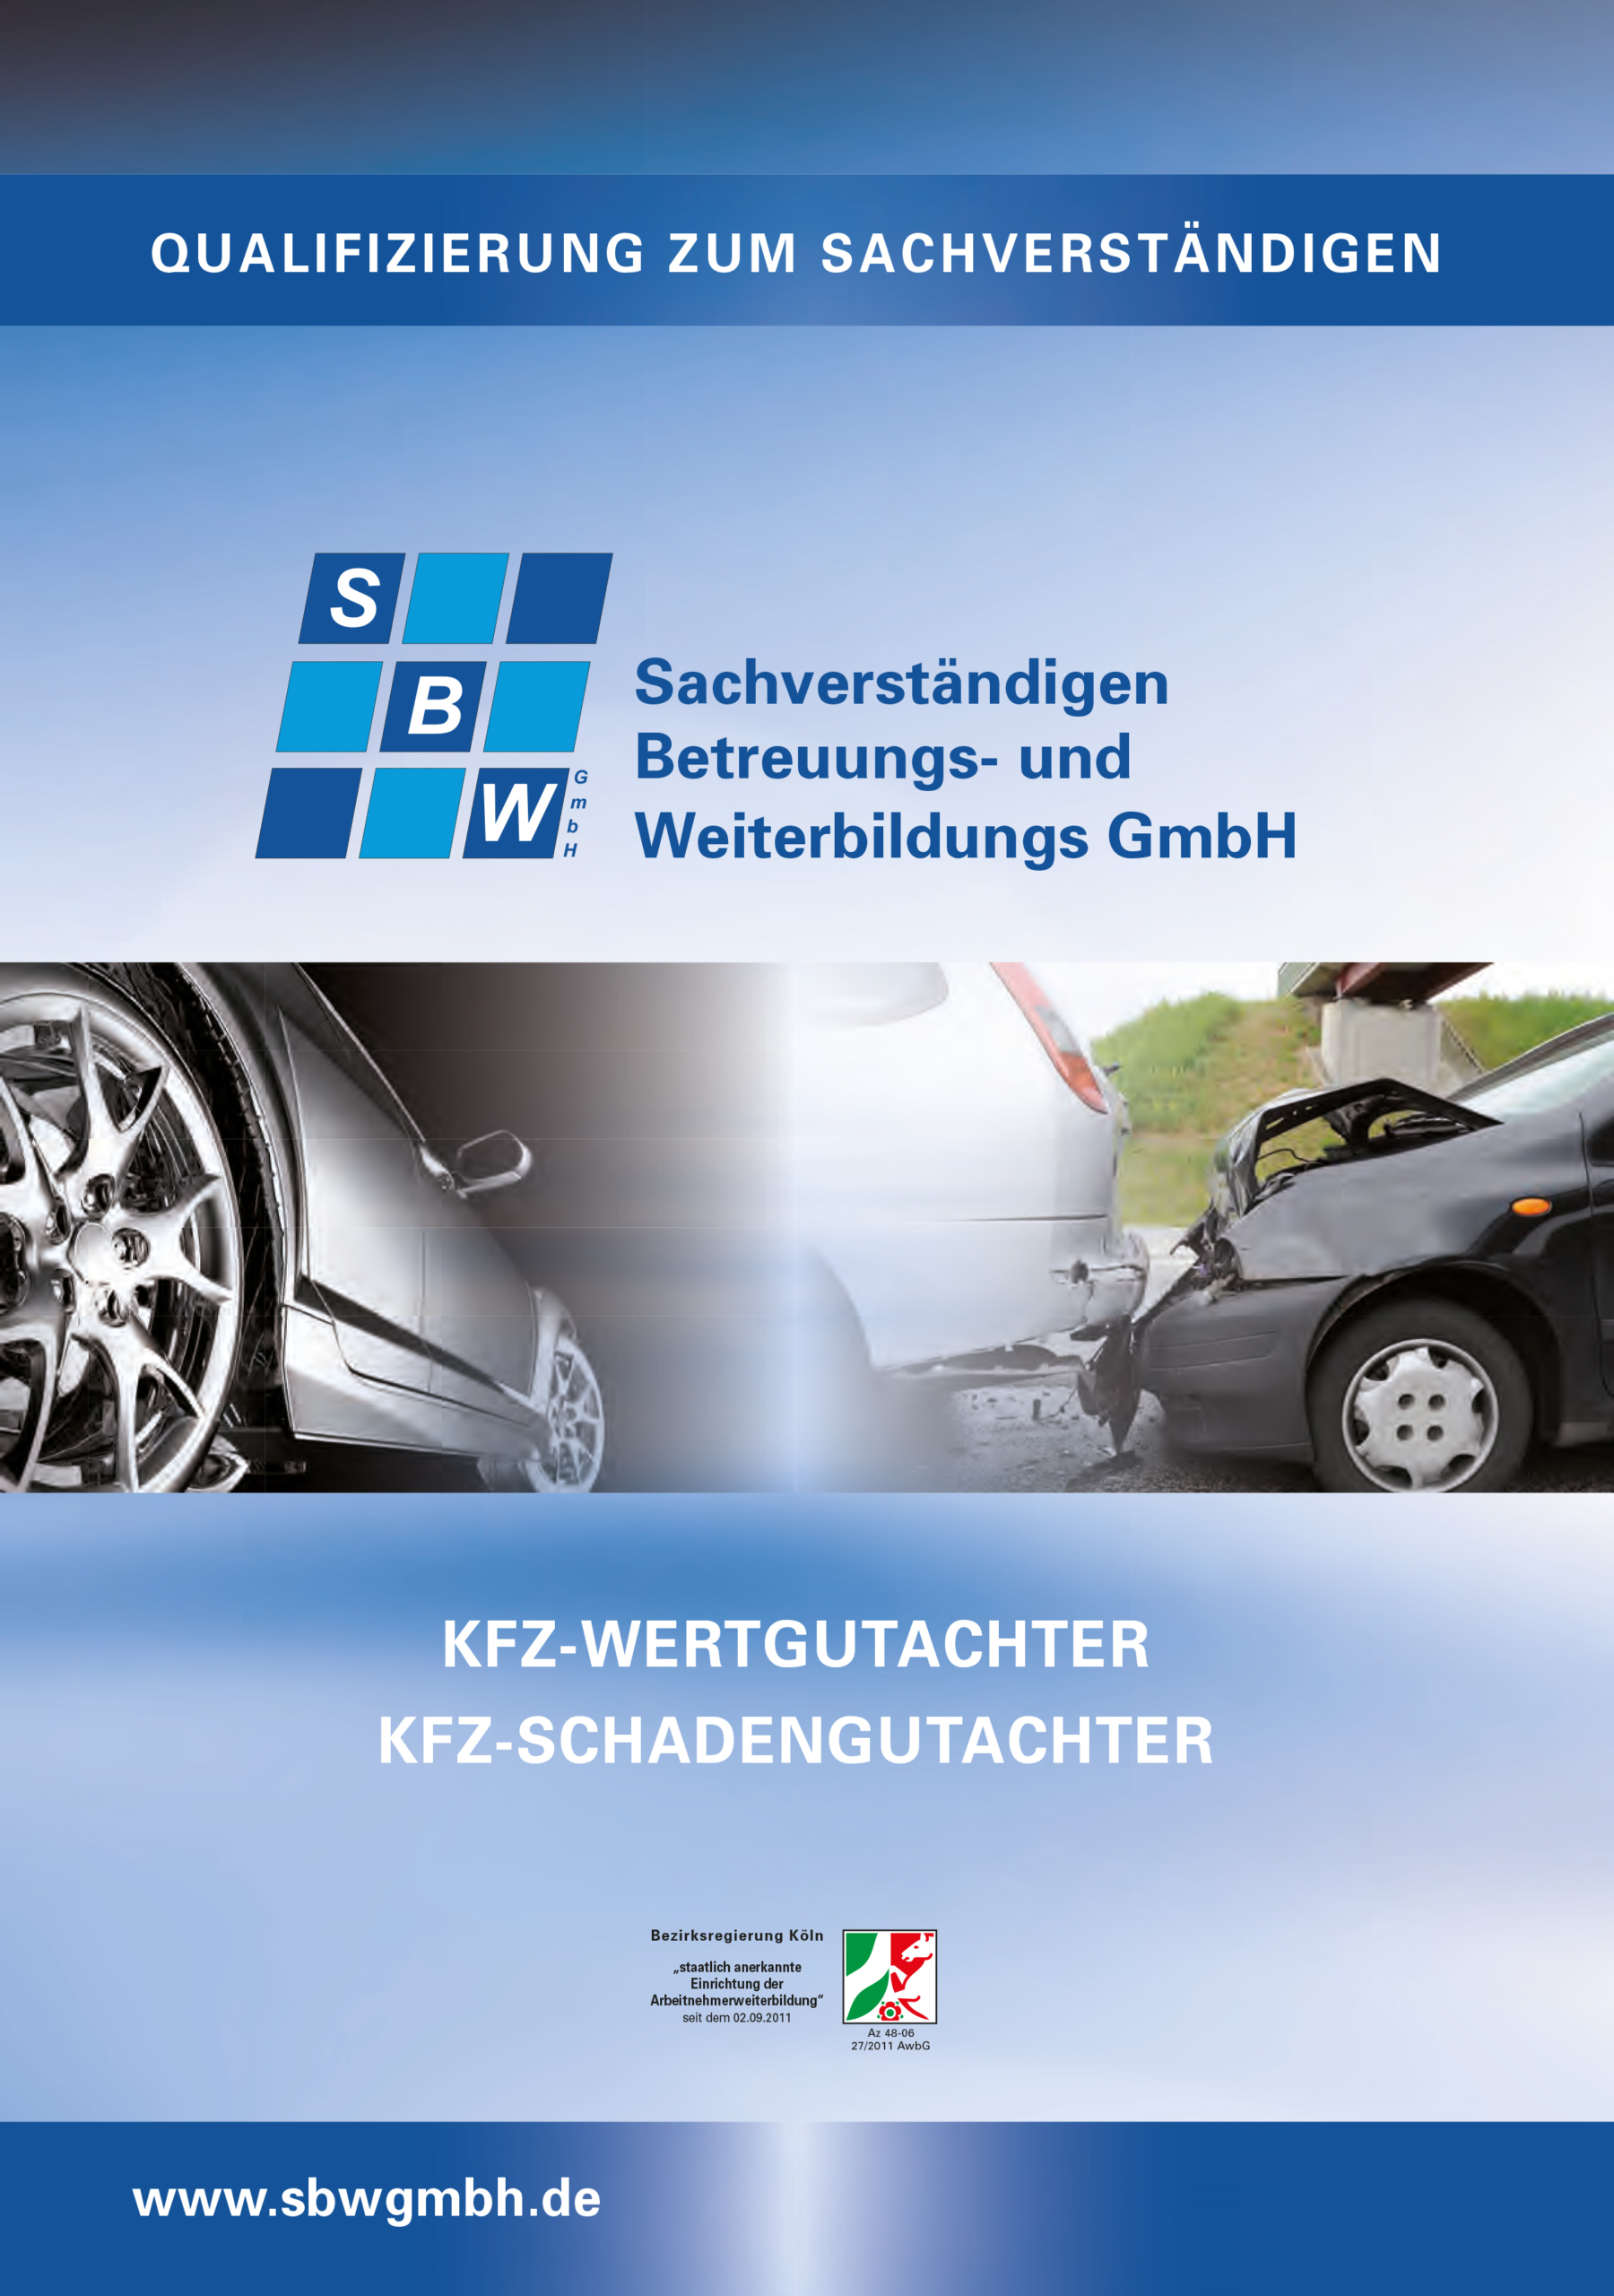 Gutachterschulung, Sachverständigenbetreuung und Weiterbildungs GmbH